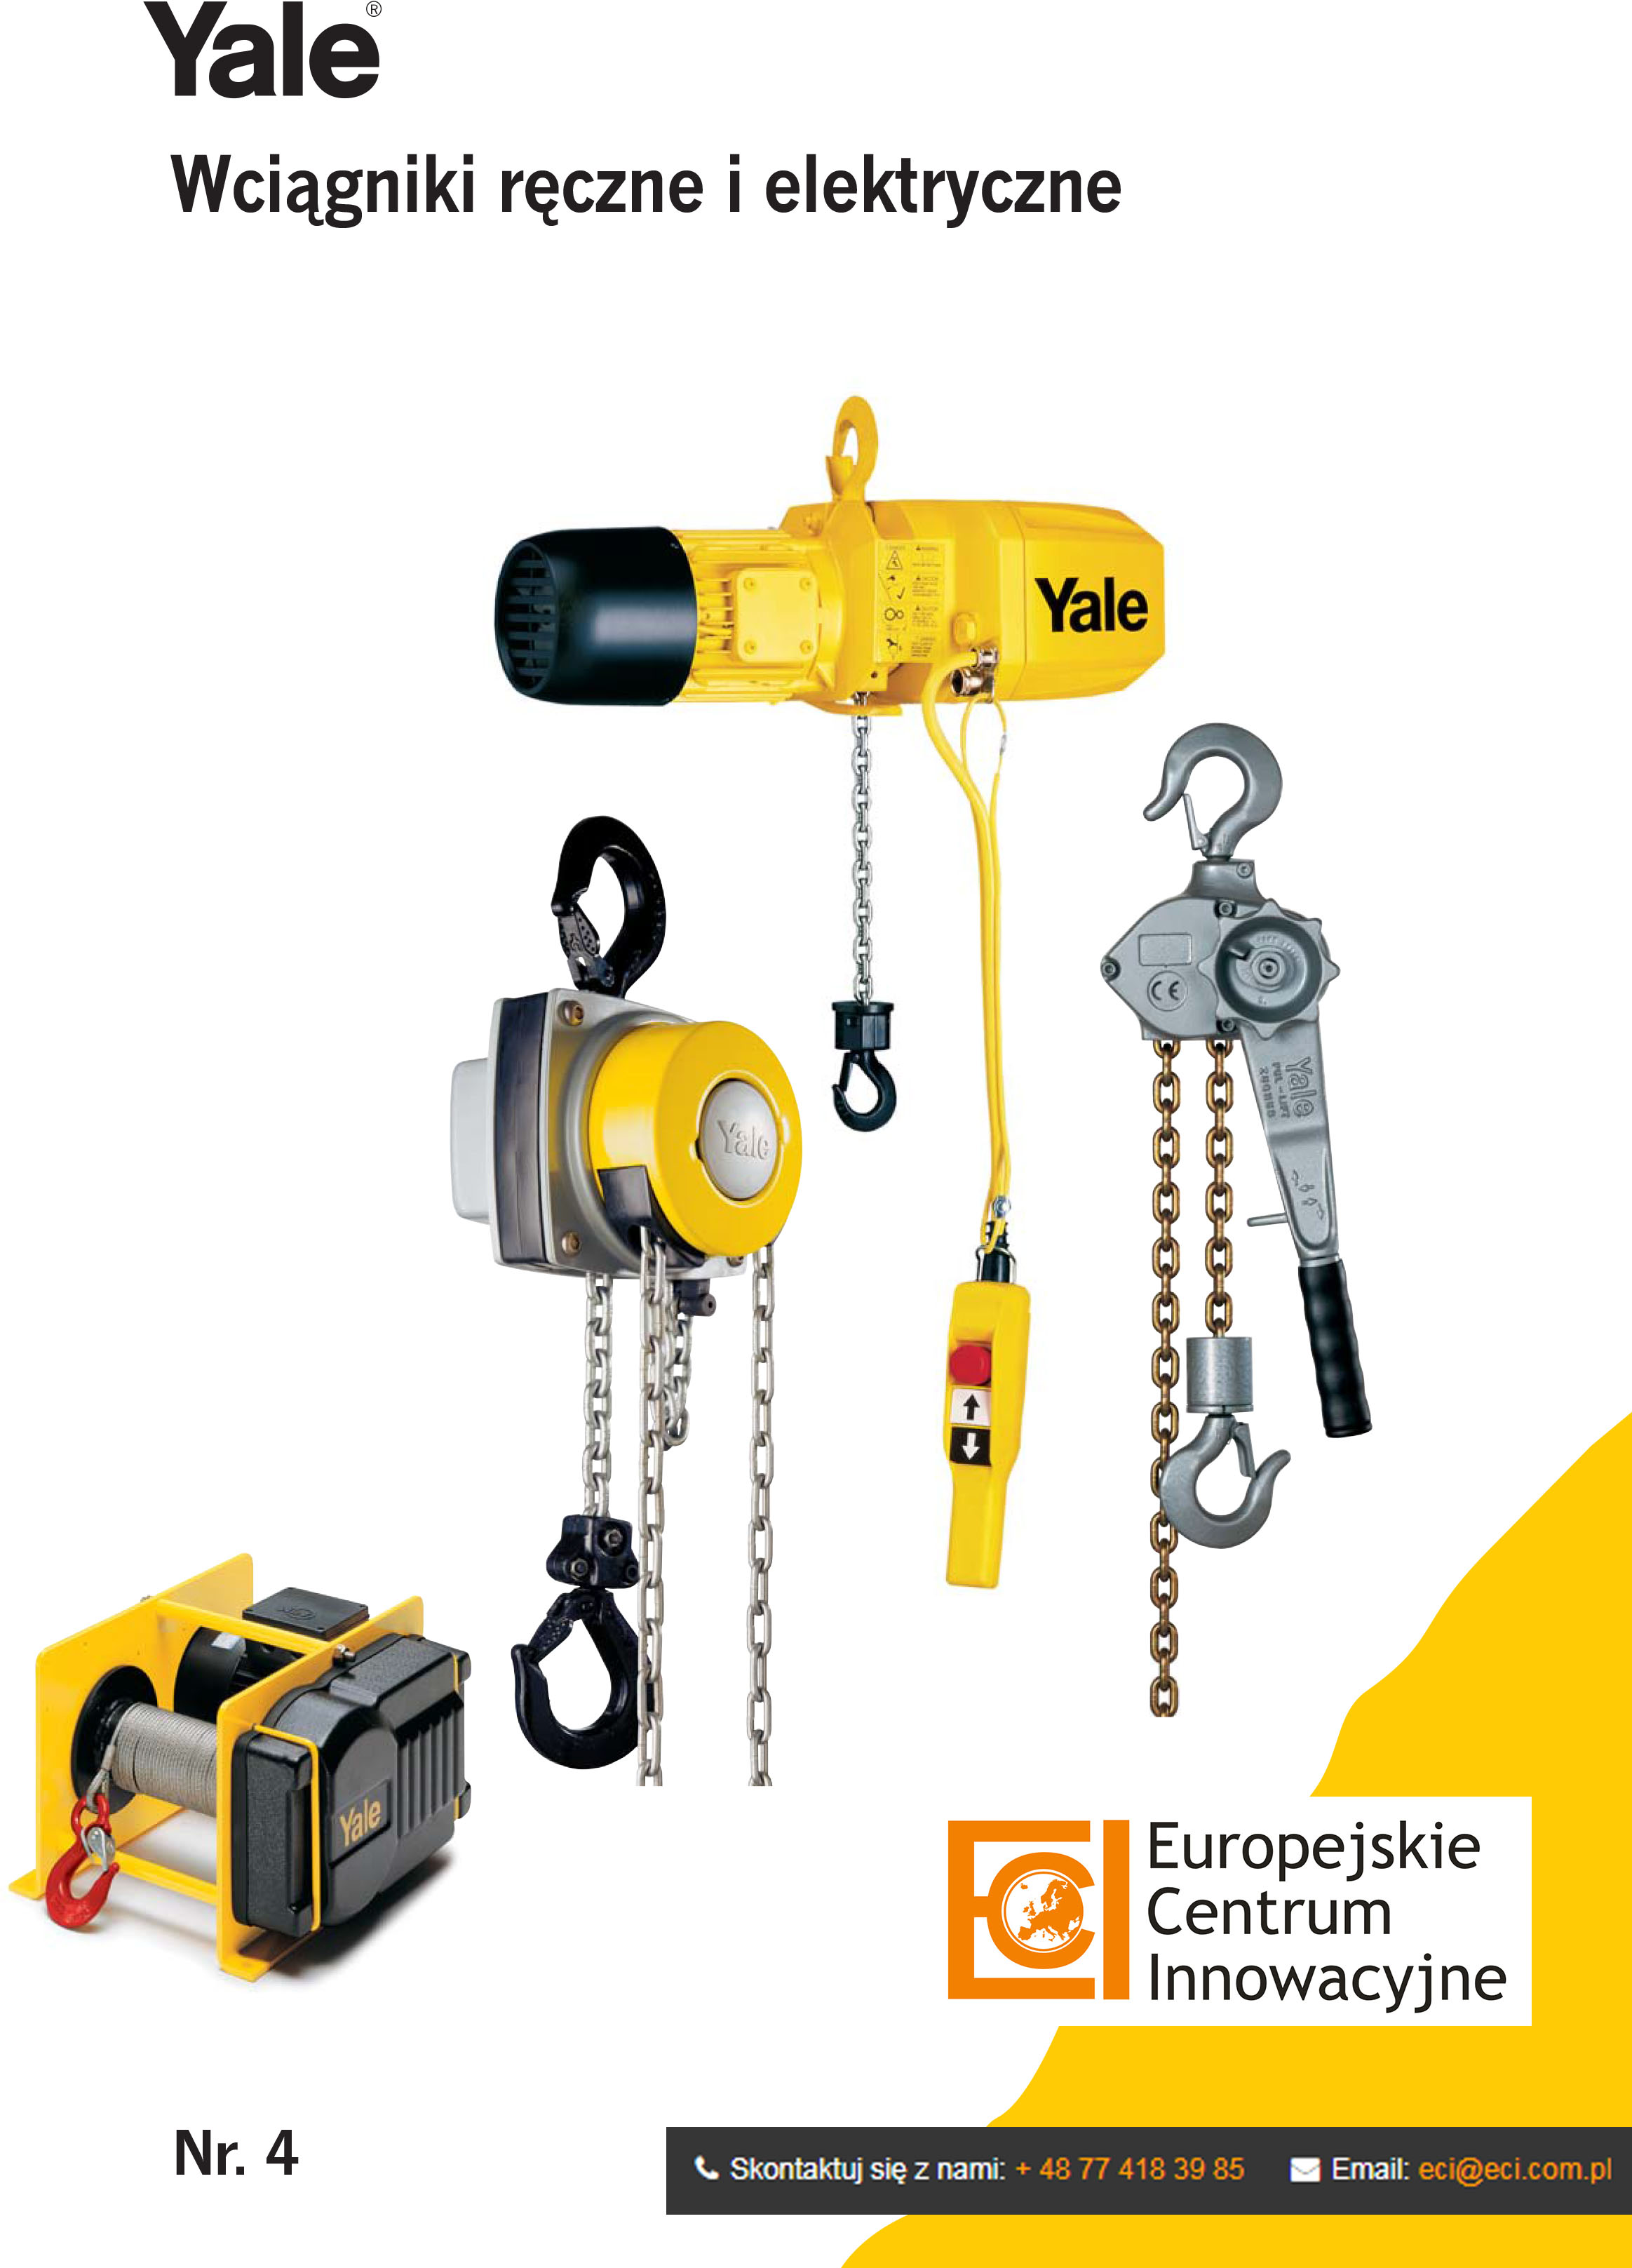 YALE - Wciągniki ręczne i elektryczne - Europejskie Centrum Innowacyjne